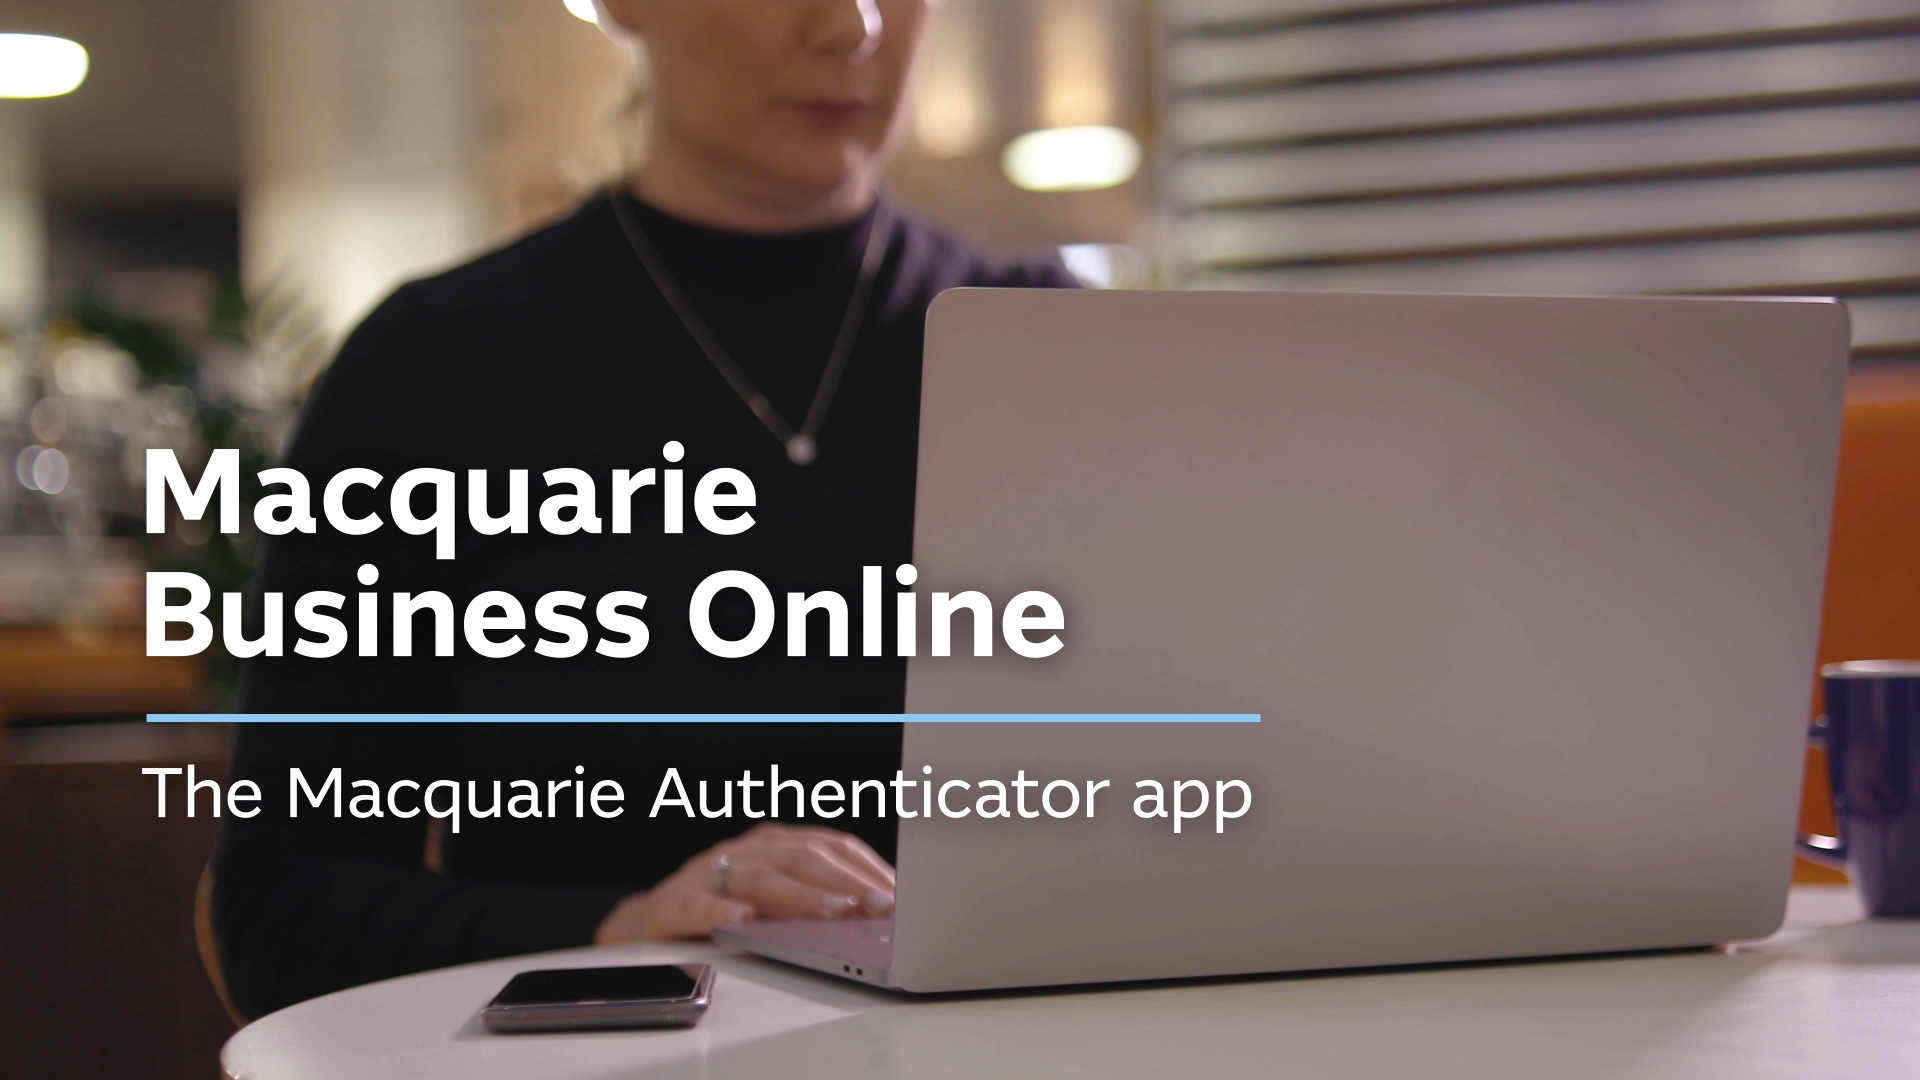 Macquarie Authenticator app video